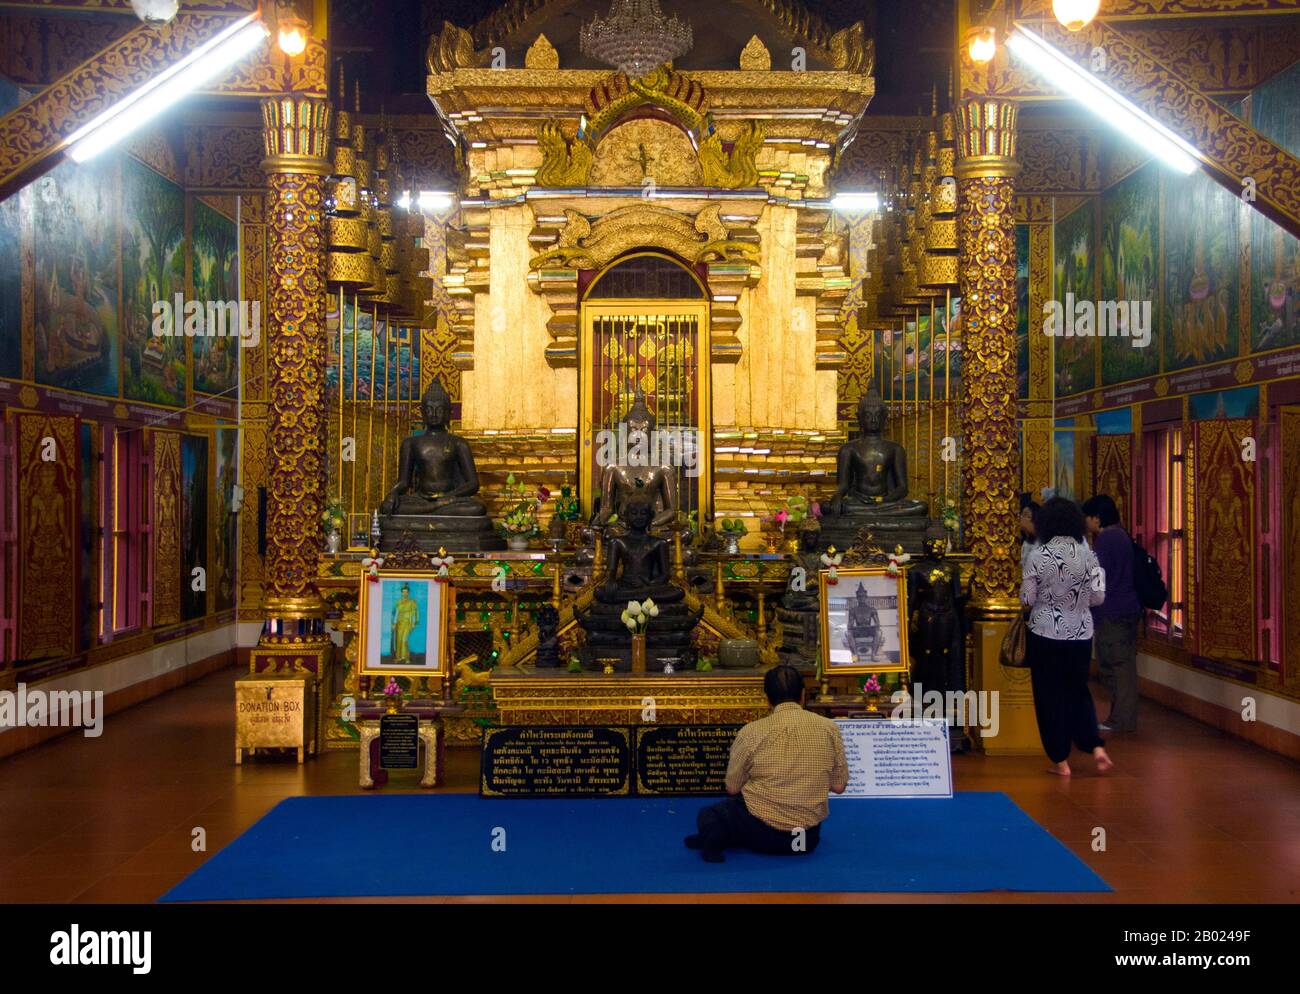 Wat Chiang Man (Chiang Mun) a été construit en 1297 ce et est considéré comme le plus ancien temple de Chiang Mai. Il a été construit sur place qui avait été utilisé par le roi Mangrai comme camp lors de la construction de sa nouvelle capitale Chiang Mai. Chiang Mai (signifiant « nouvelle ville »), parfois écrit comme « Chiengmai » ou « Chiangmai », est la ville la plus importante et la plus culturellement significative du nord de la Thaïlande. Le roi Mengrai fonde la ville de Chiang Mai en 1296, et il succède à Chiang Rai comme capitale du royaume de Lanna. Banque D'Images